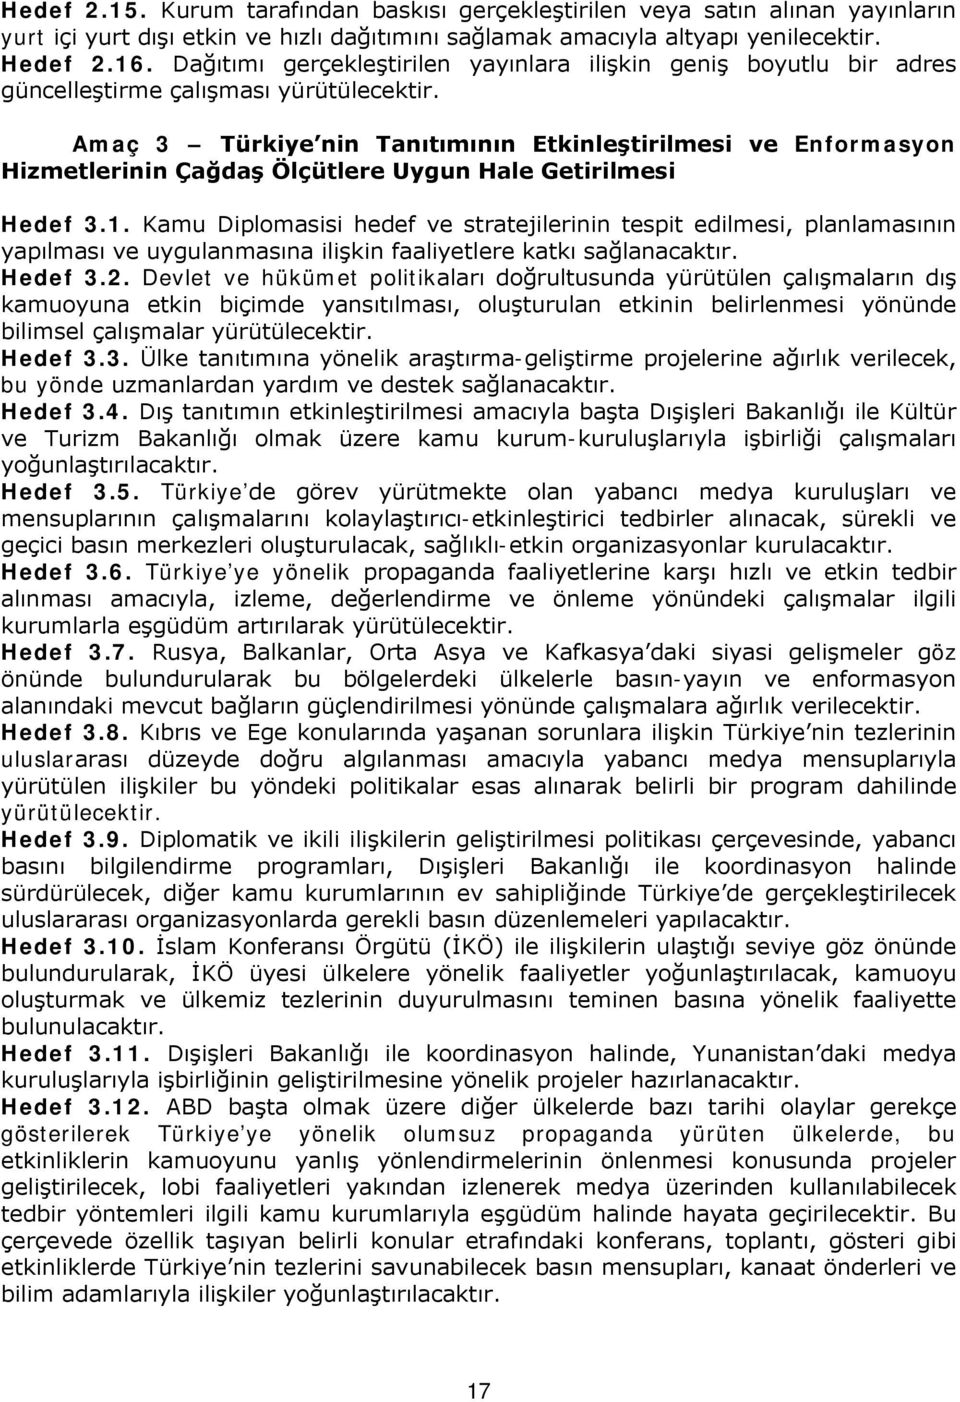 Amaç 3 Türkiye nin Tanıtımının Etkinleştirilmesi ve Enformasyon Hizmetlerinin Çağdaş Ölçütlere Uygun Hale Getirilmesi Hedef 3.1.